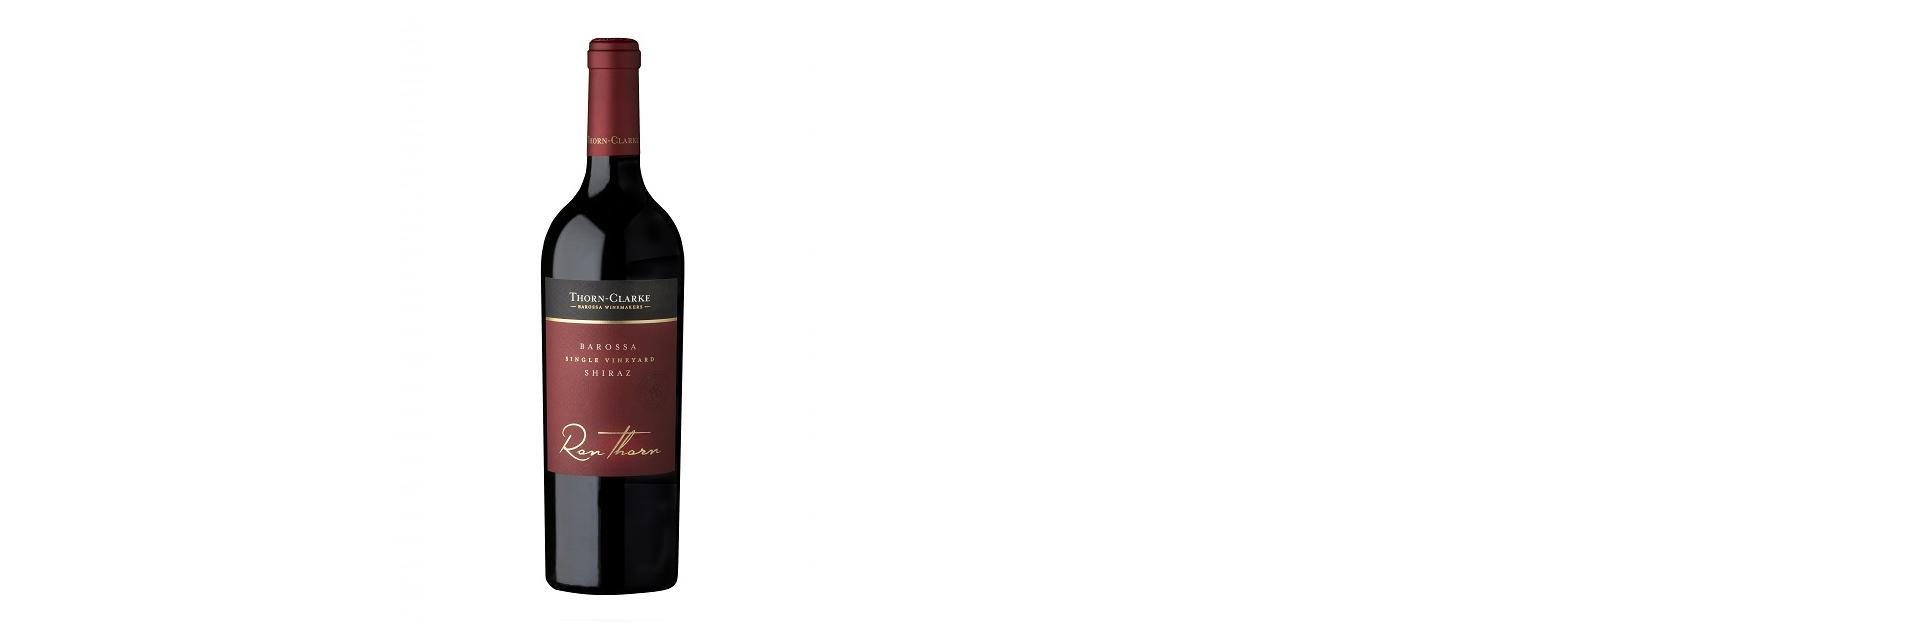 Rượu vang Úc Thorn-Clarke RON THORN Shiraz